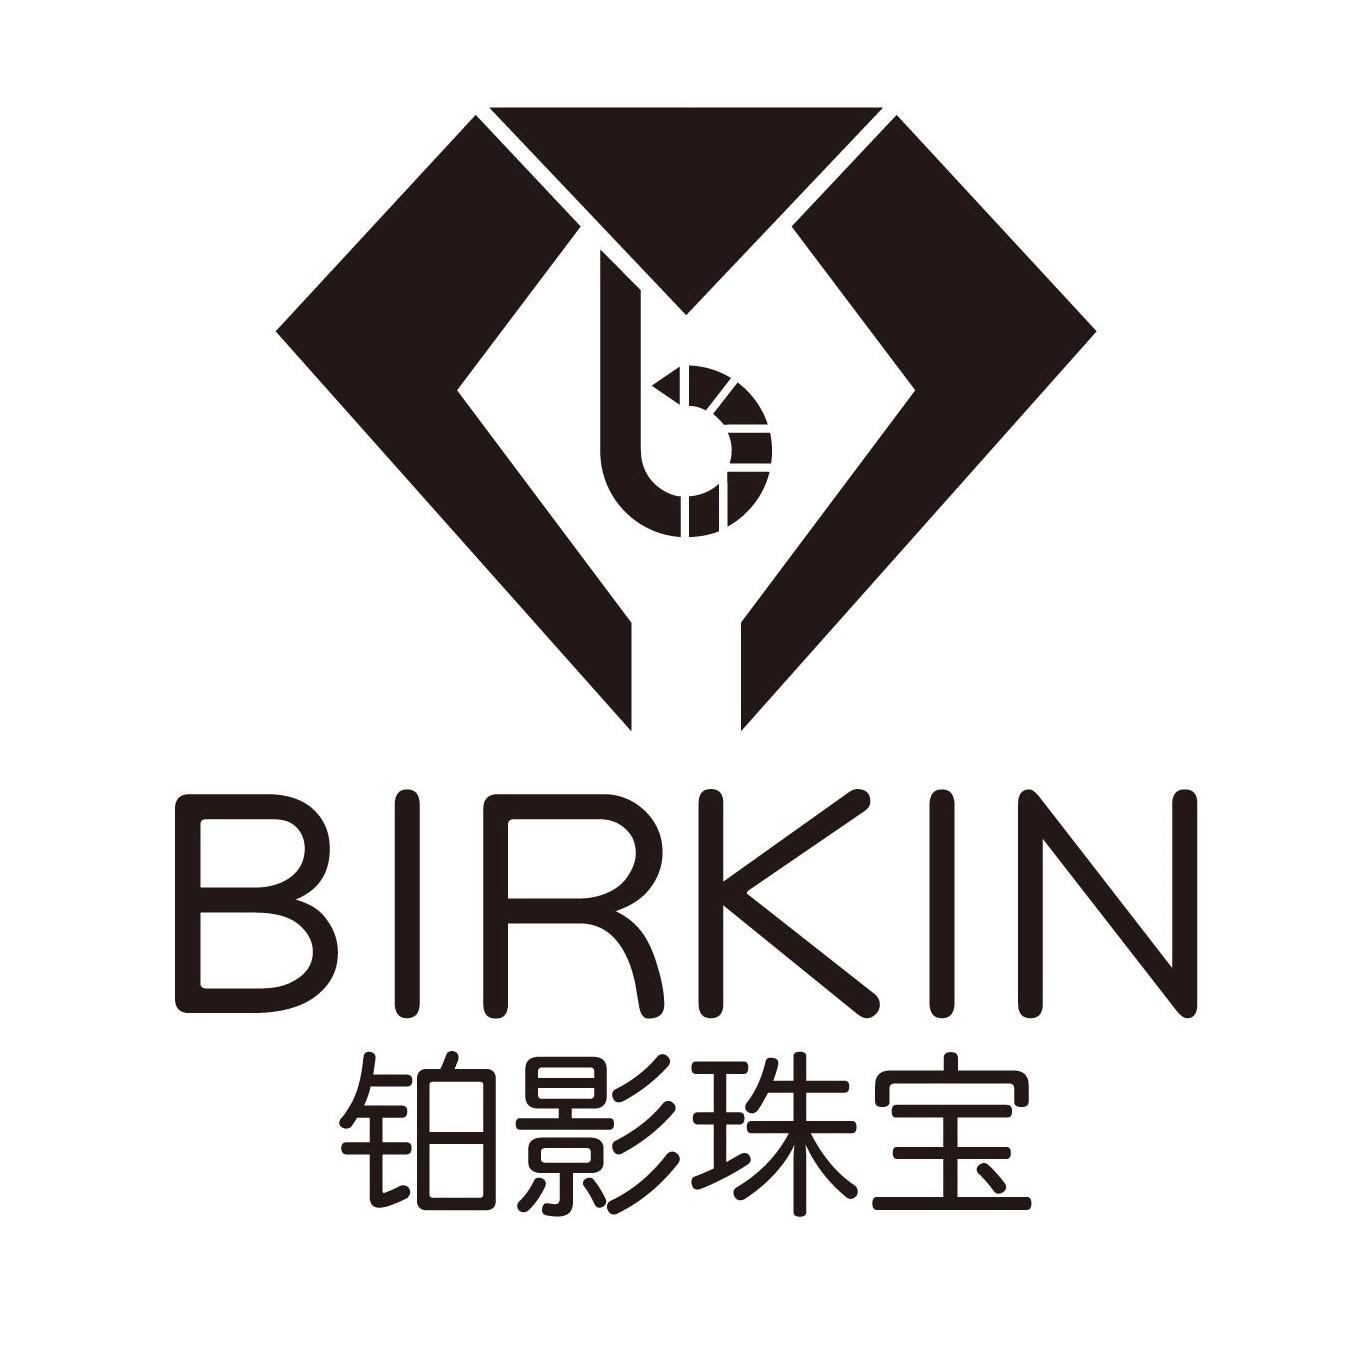 商标文字b birkin 铂影珠宝商标注册号 49851575,商标申请人深圳铂影